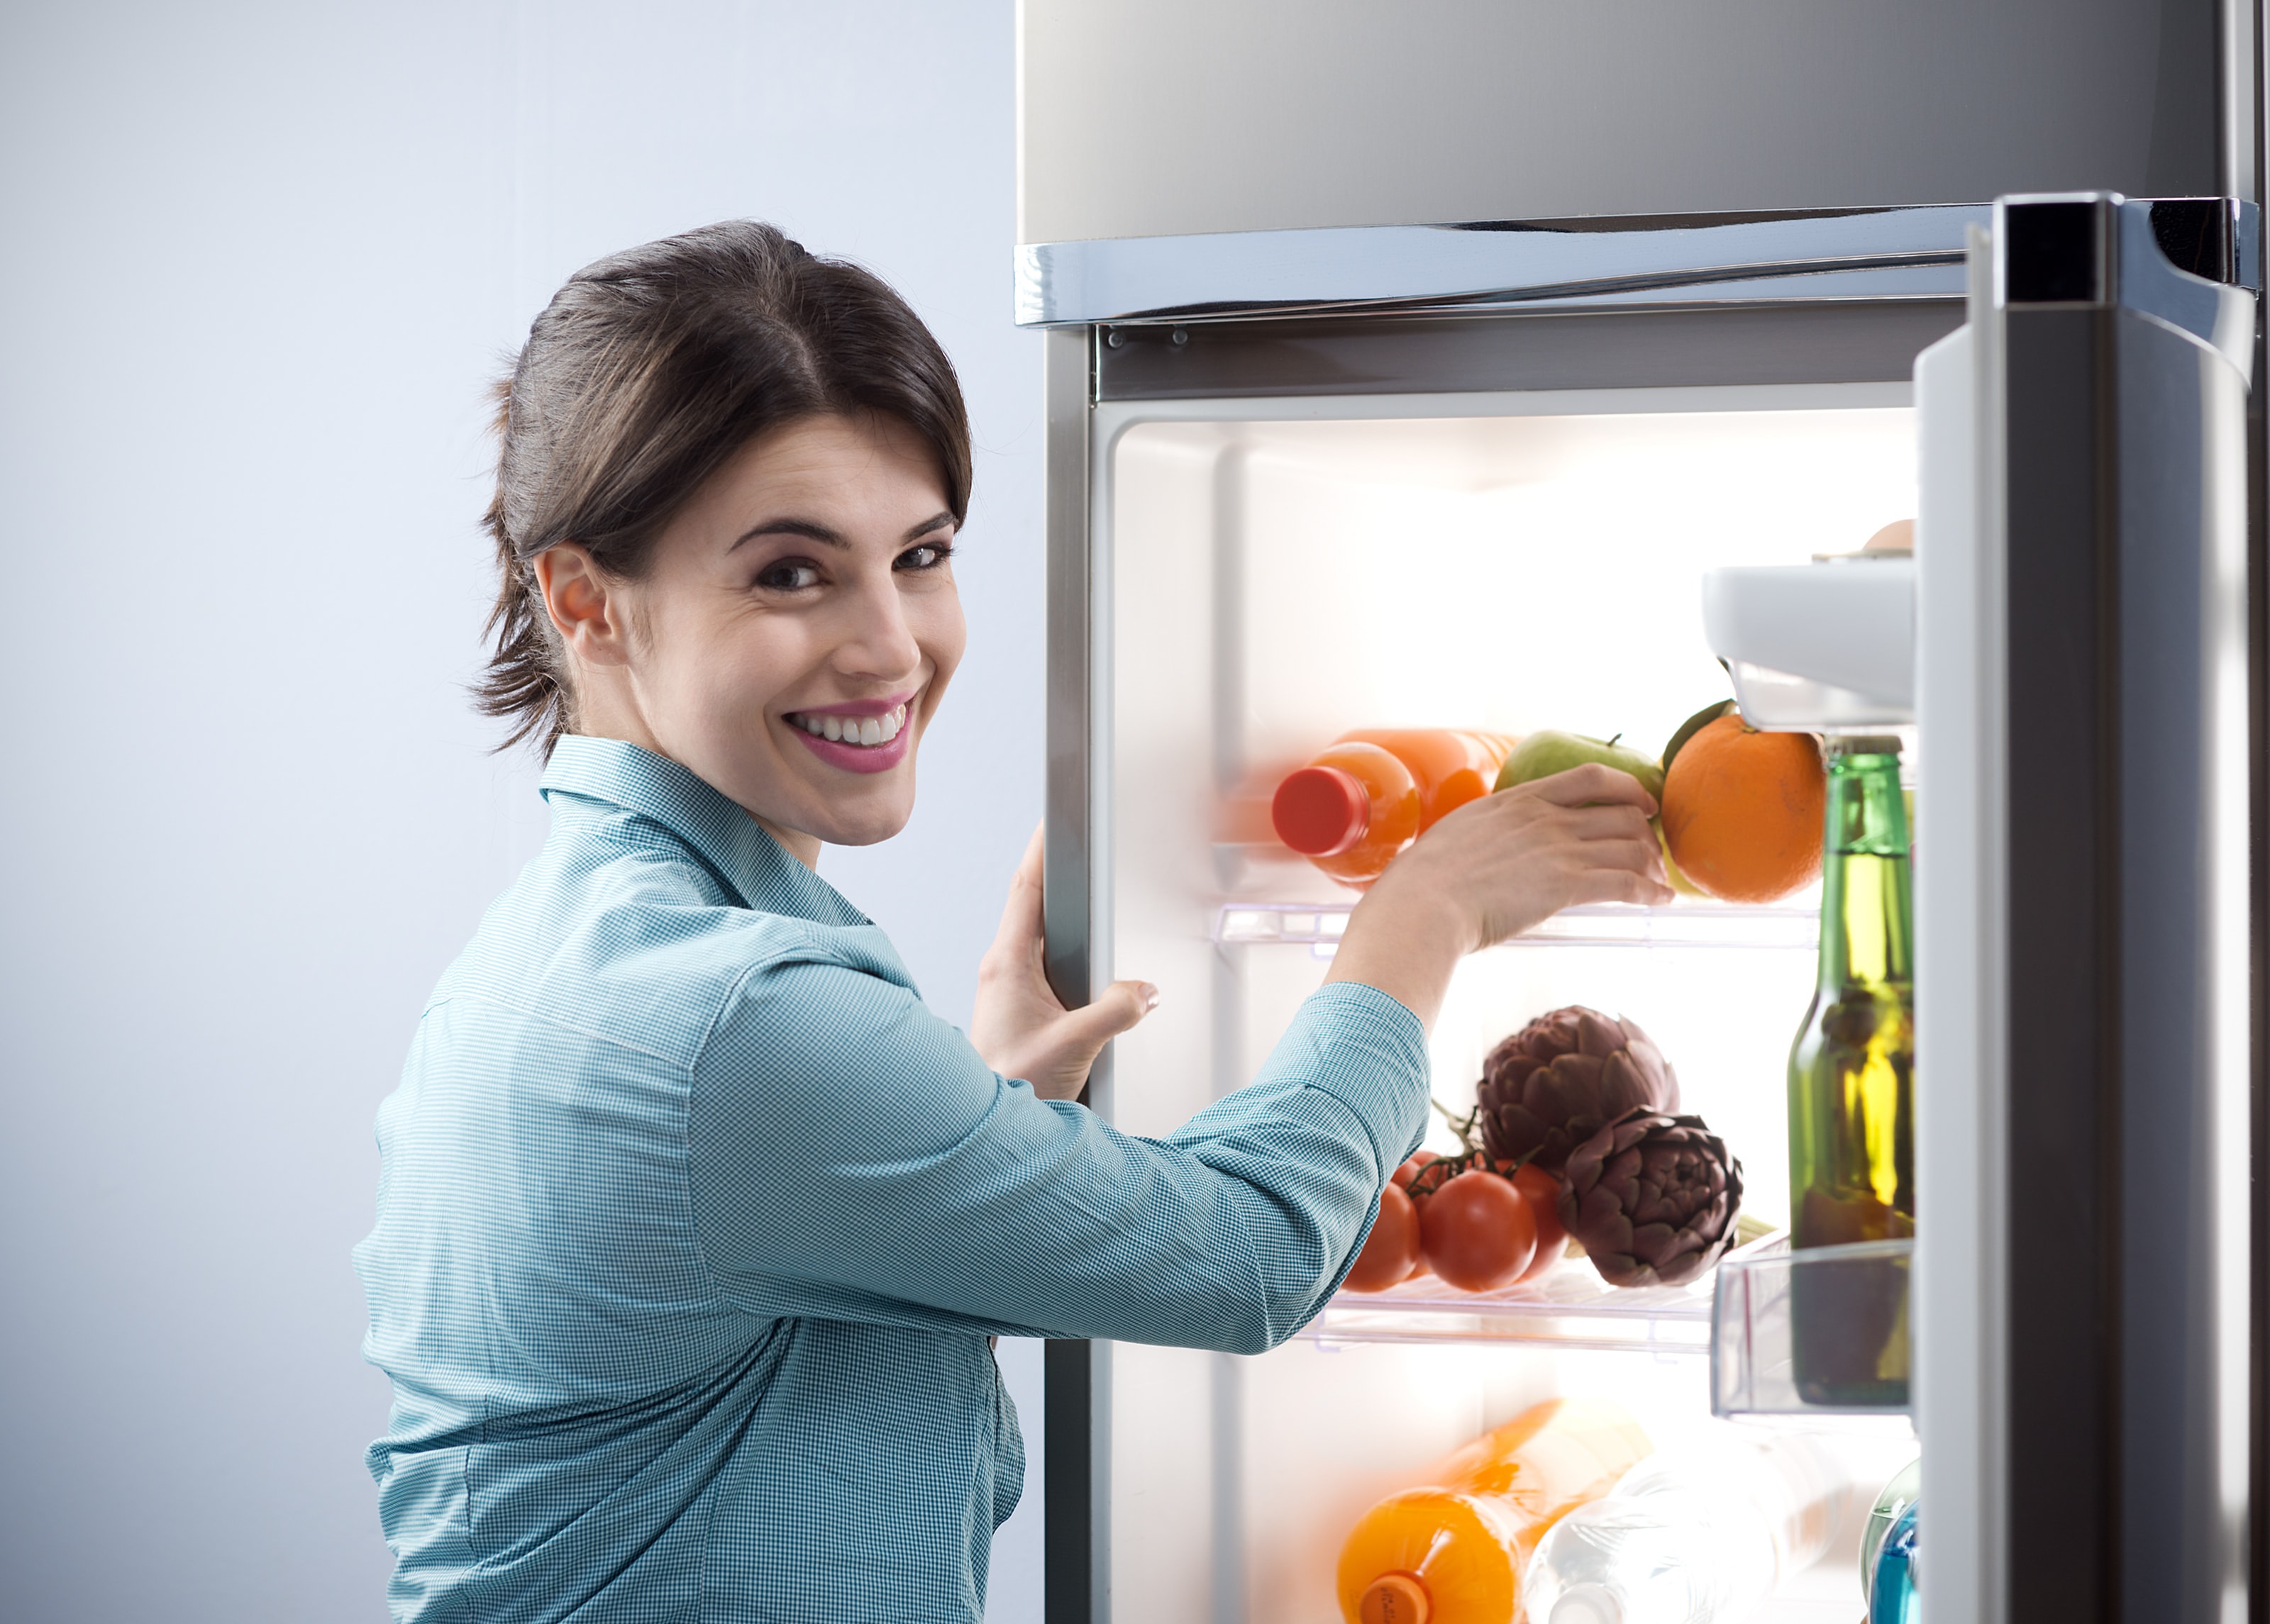 Вода в холодильнике причины и способы устранения неисправности. Консультация специалиста компании РемХол66 24/7!